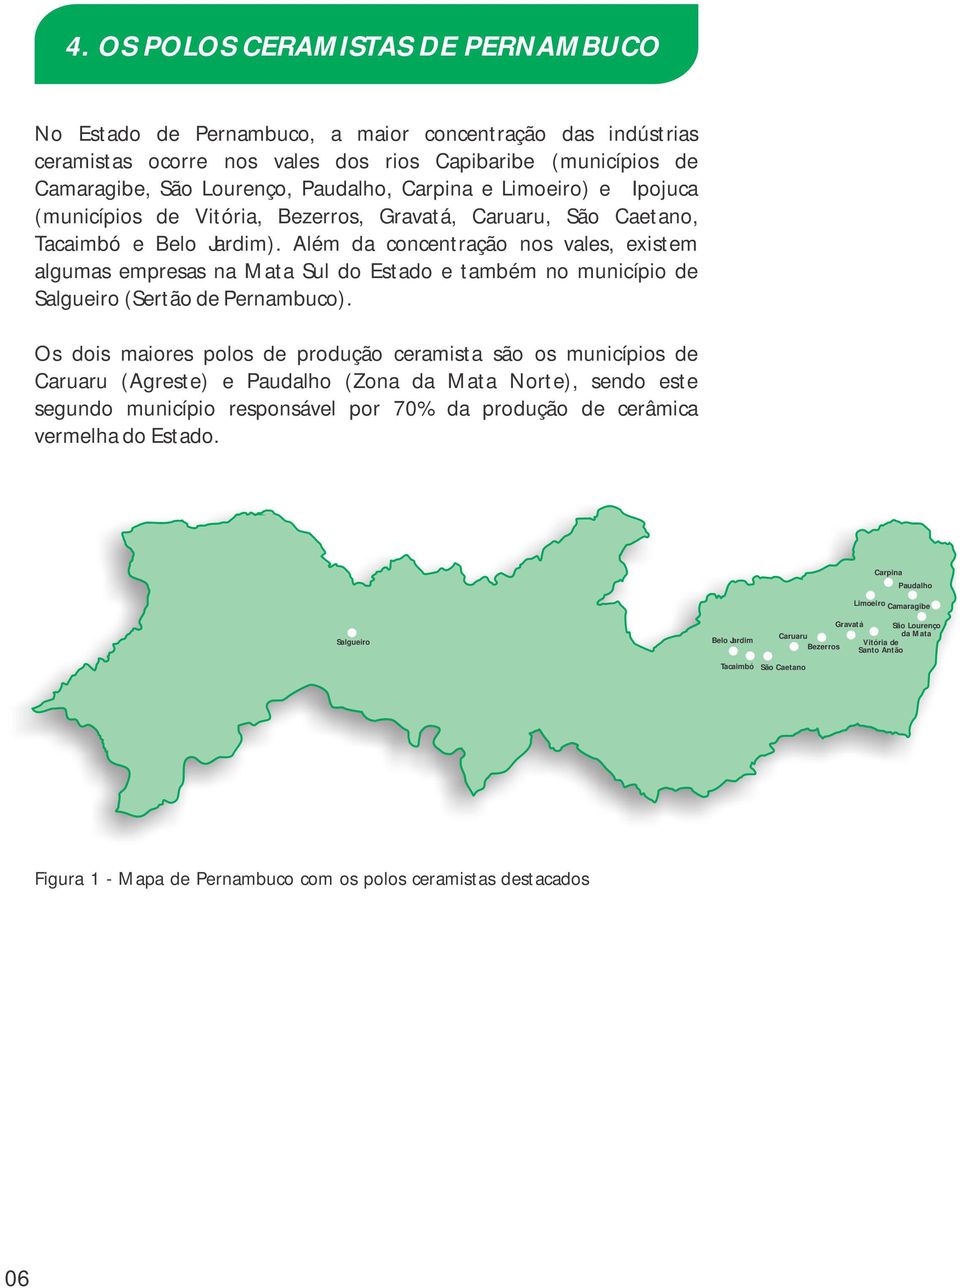 Além da concentração nos vales, existem algumas empresas na Mata Sul do Estado e também no município de Salgueiro (Sertão de Pernambuco).